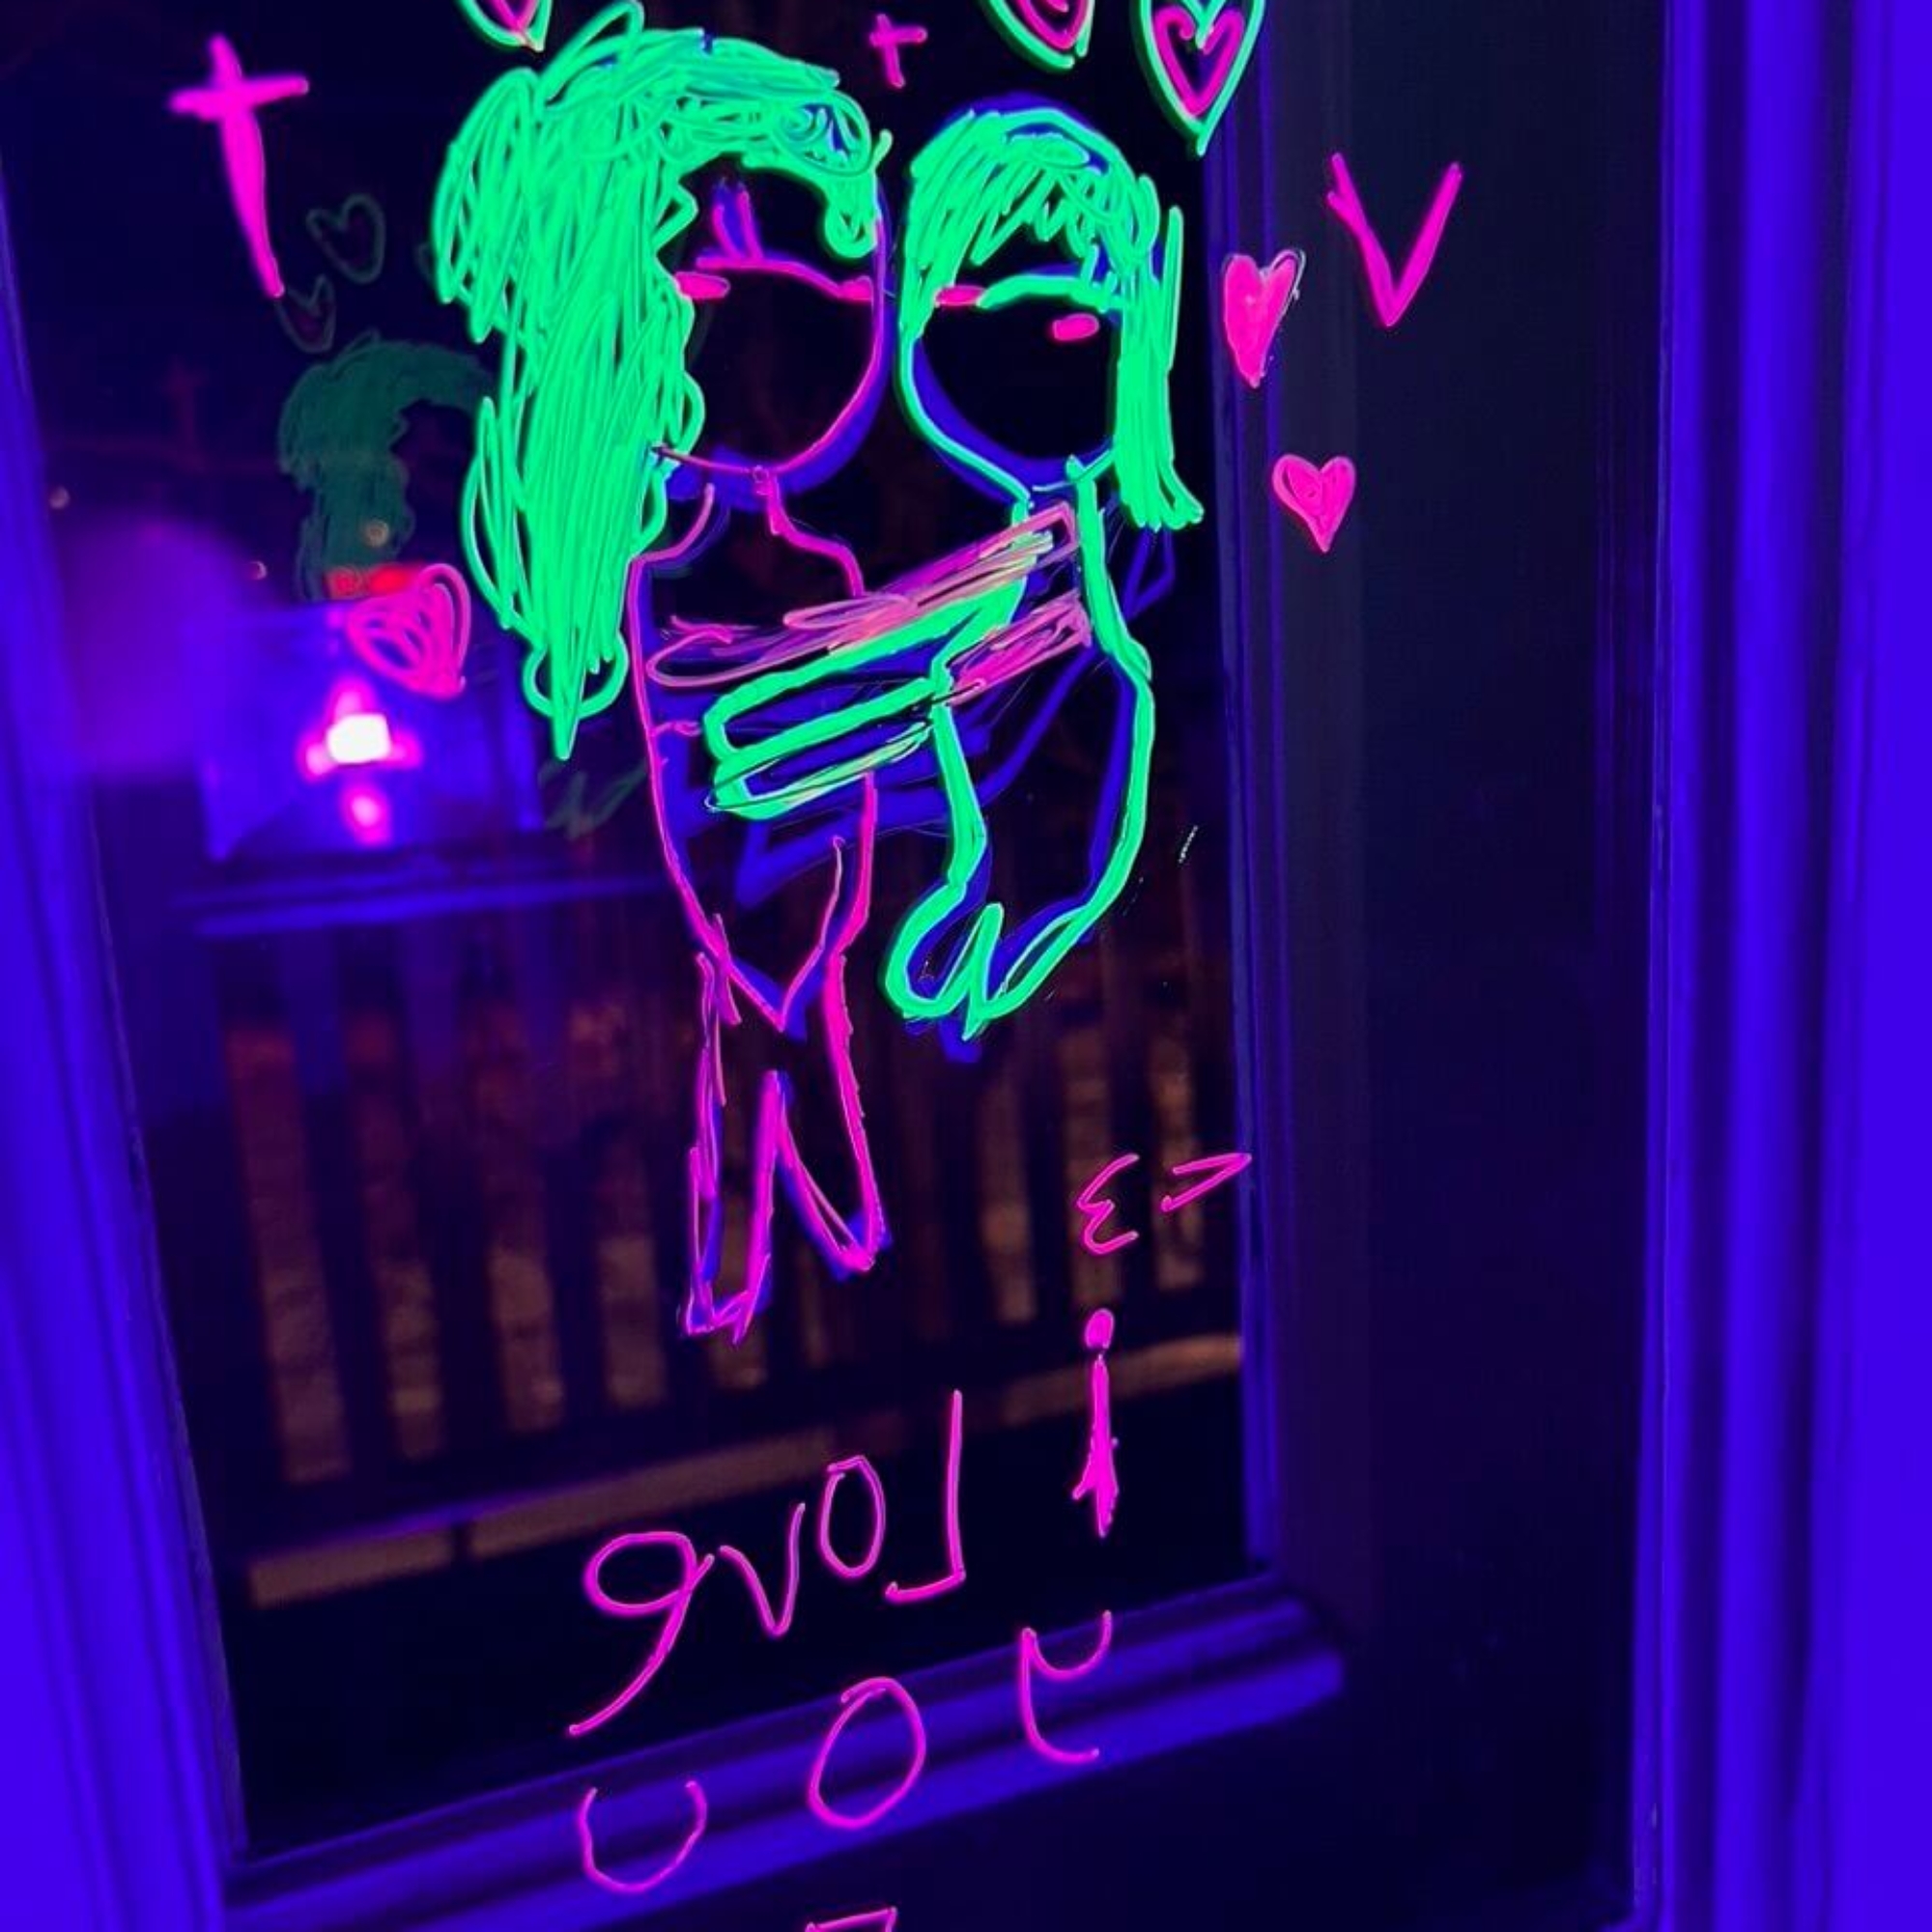 UV-valossa loistava halaavaa pariskuntaa ja sydämiä esittävä piirustus ikkunassa.